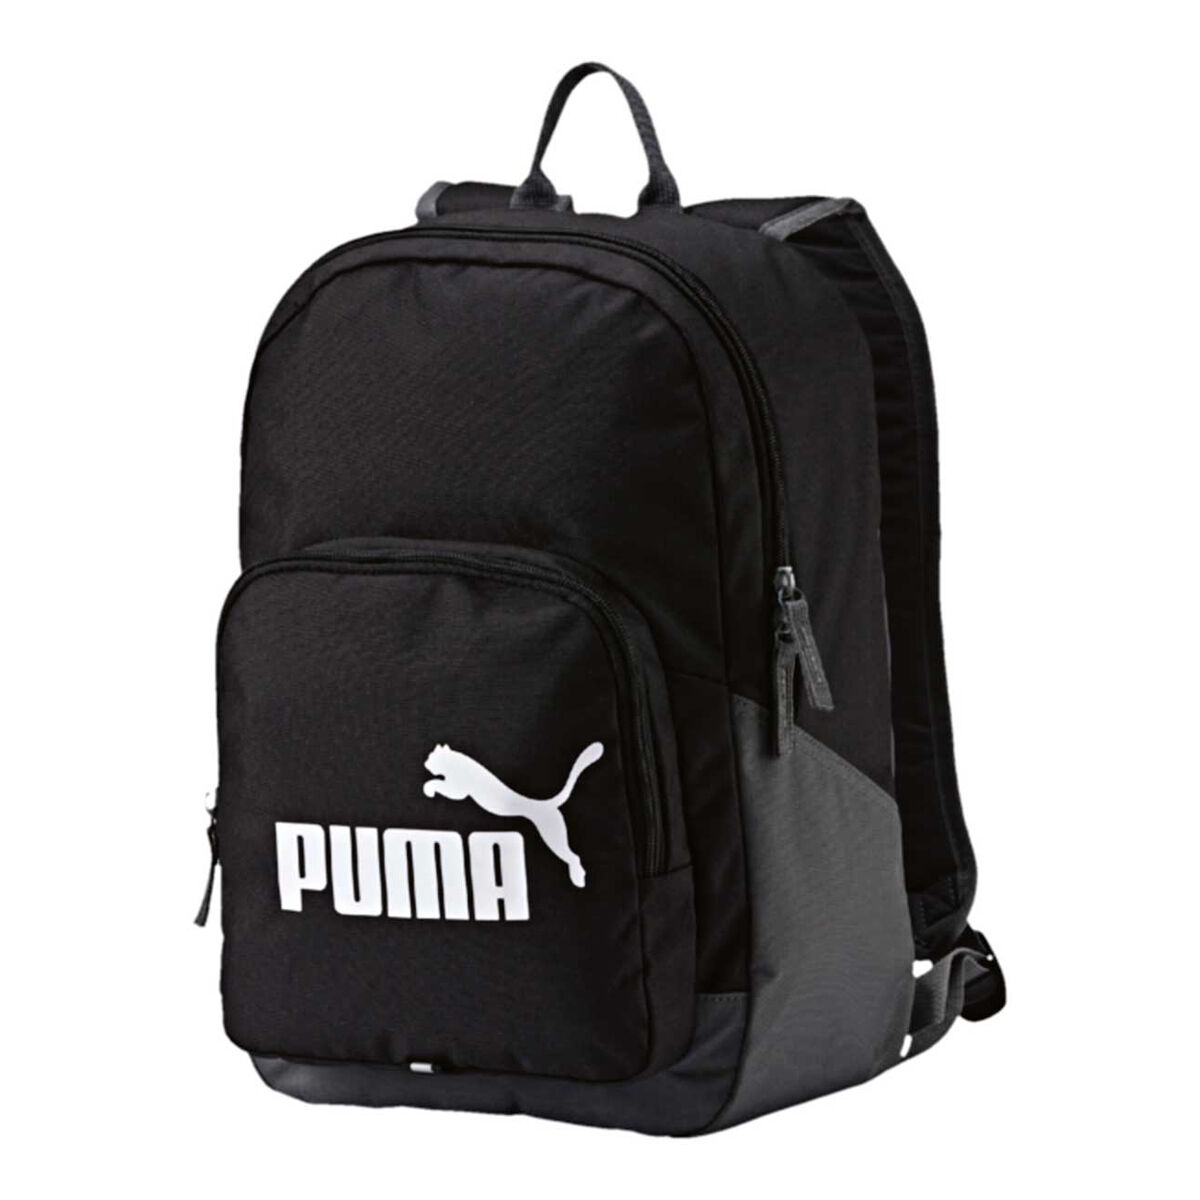 puma backpack australia